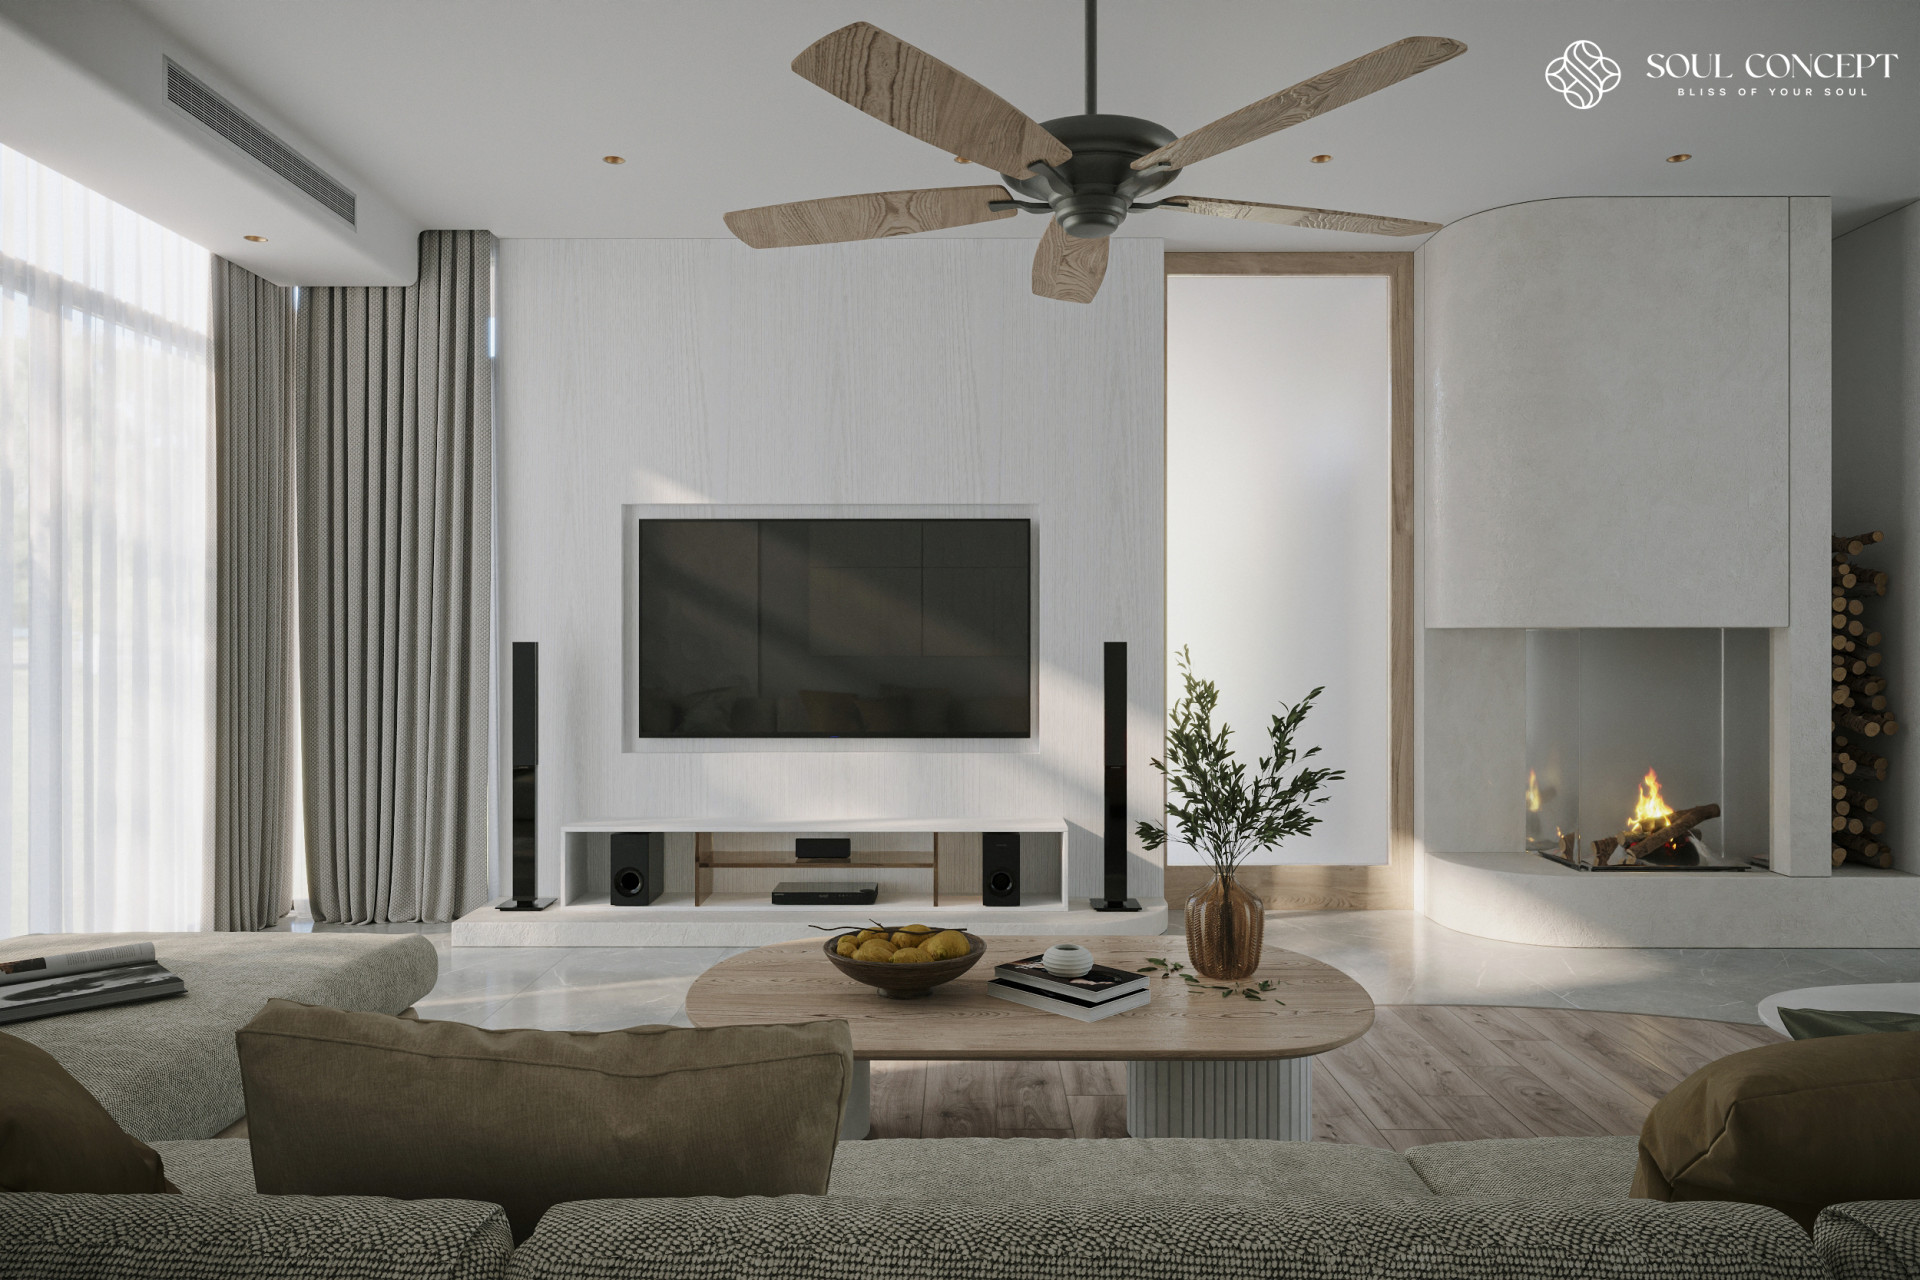 Soul Concept bố trí thêm chậu cây trang trí tạo nên “không gian xanh” tươi mát cho phòng khách